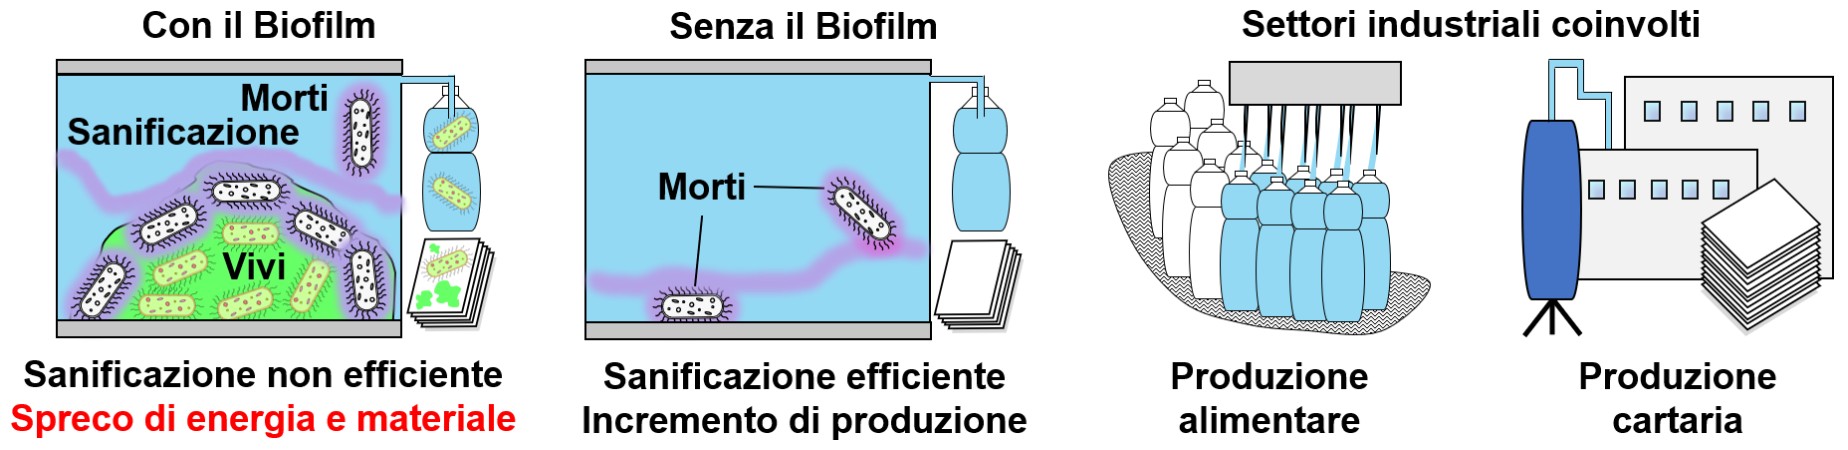 Impatto del biofilm su efficienza di sanificazione e consumo energetico in impianti produttivi